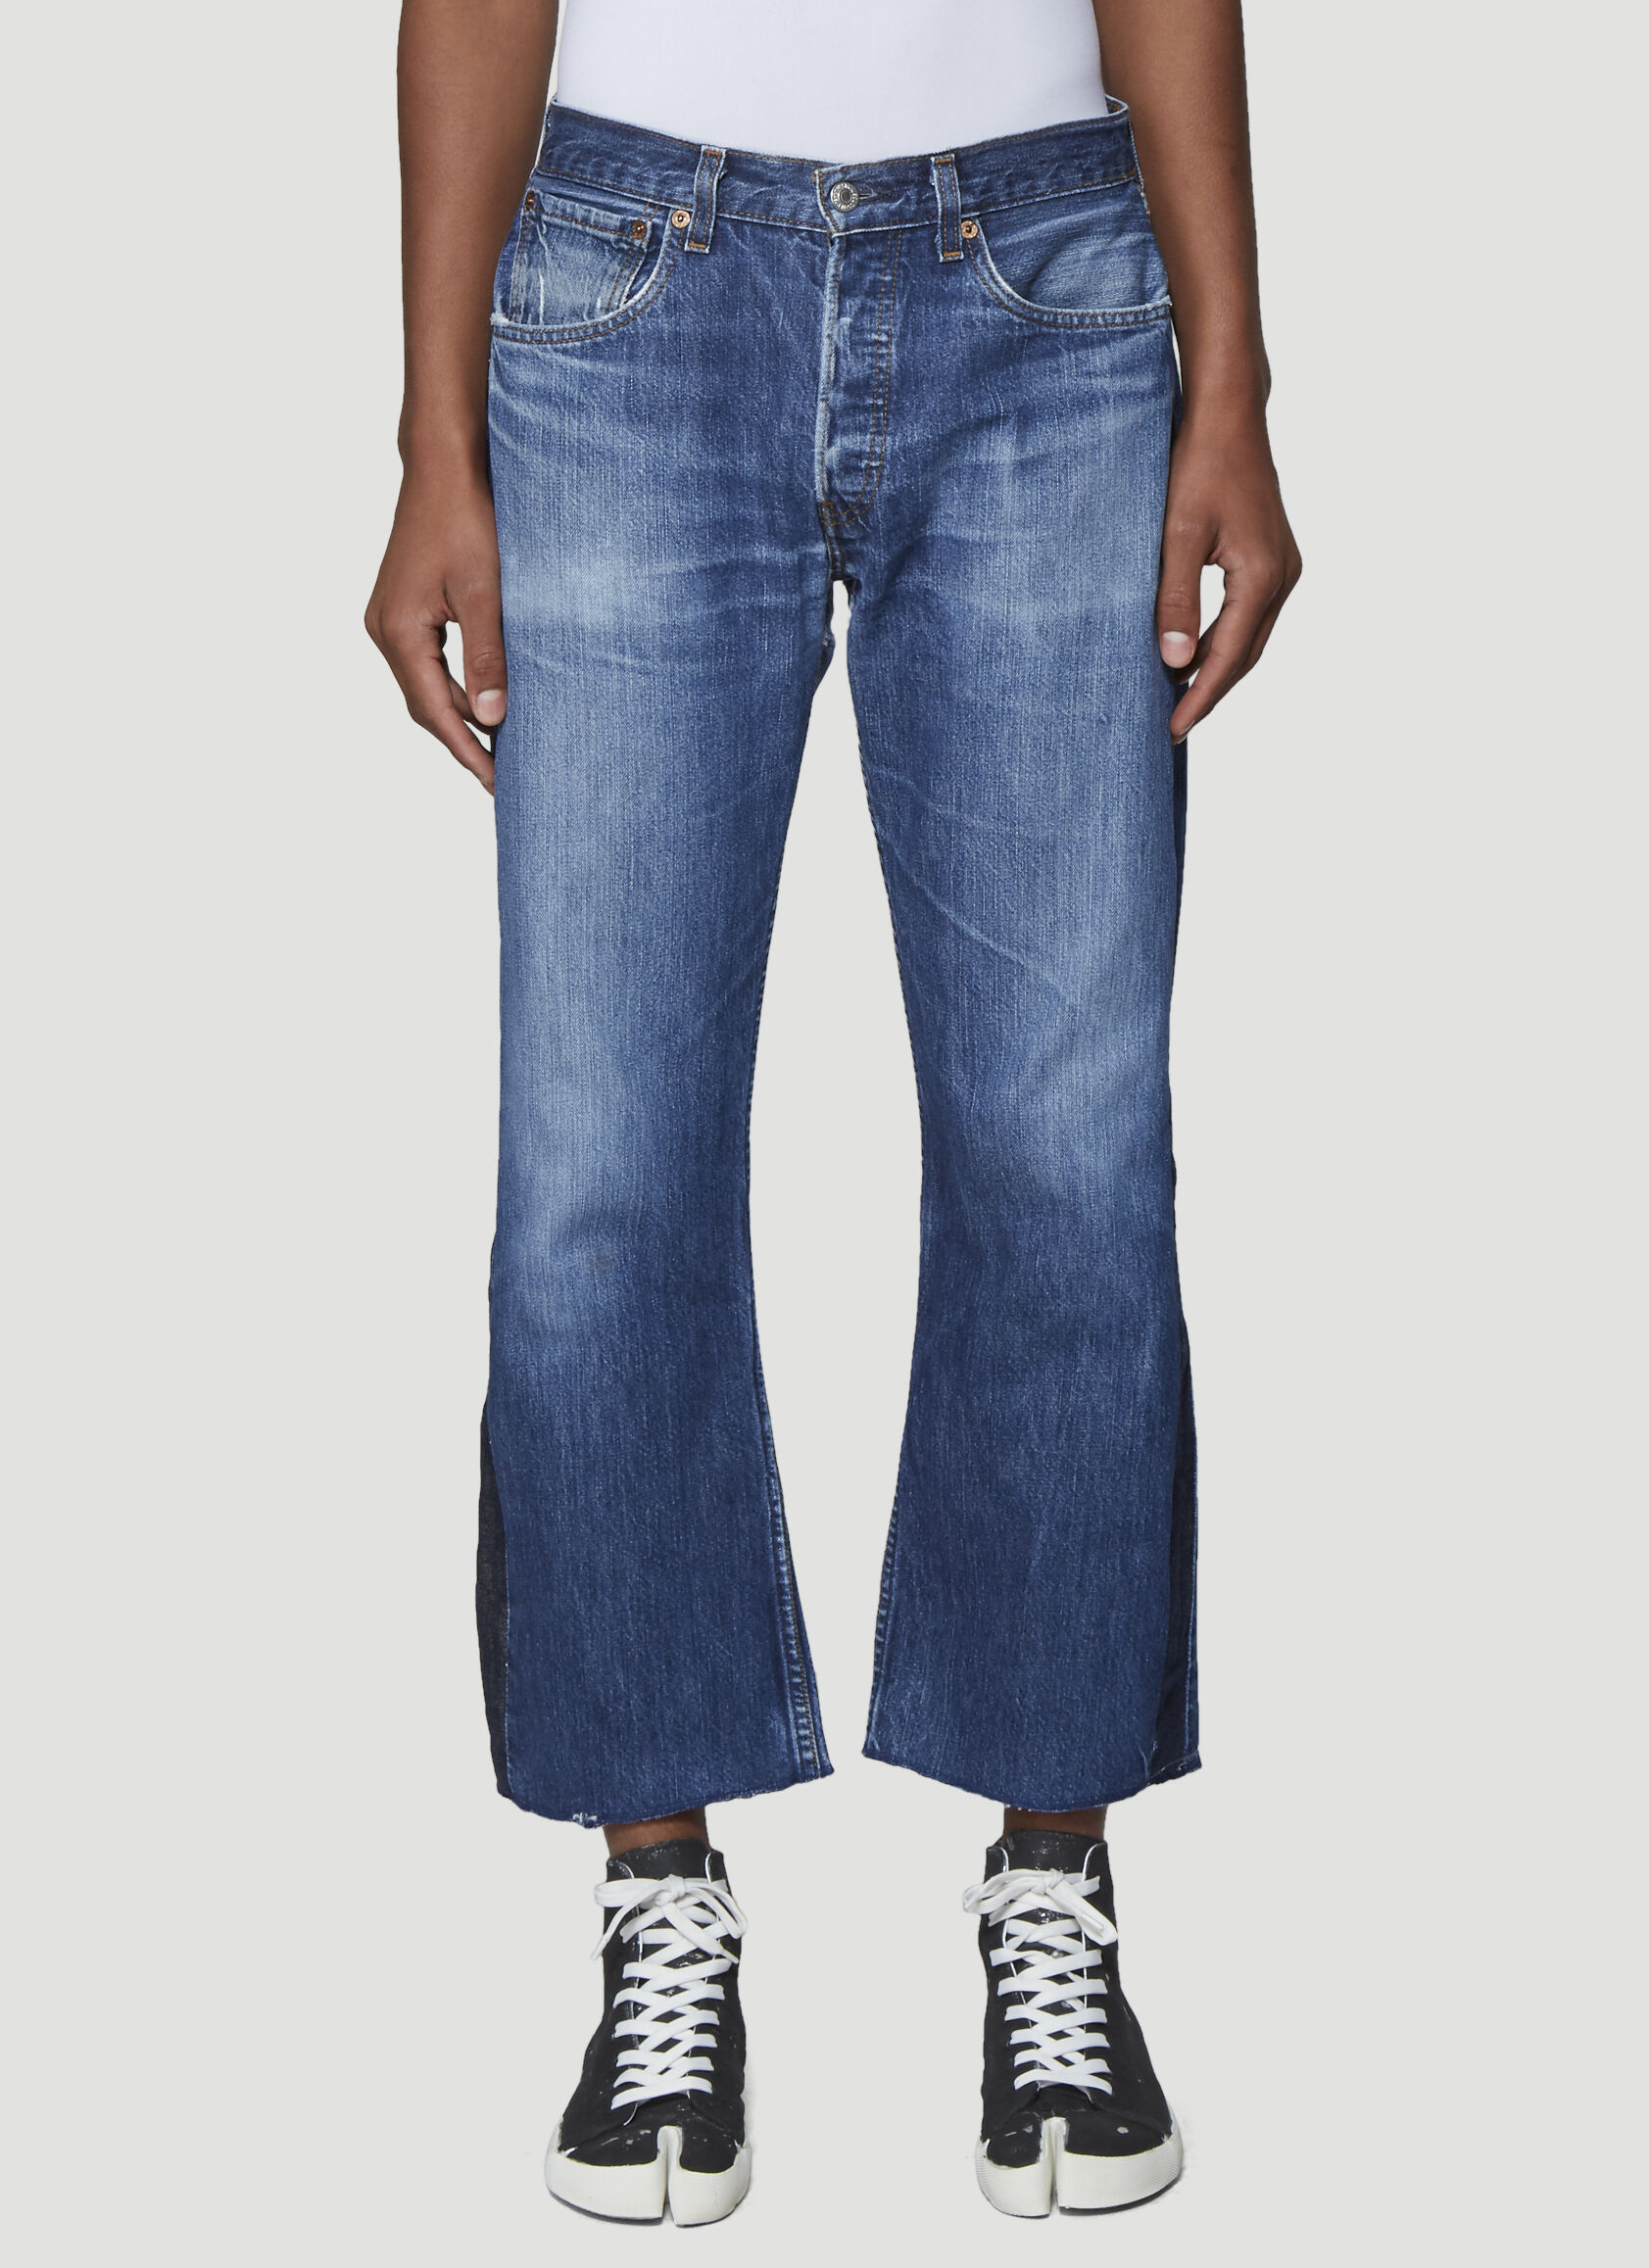 Saint Laurent Sideline Jeans 블랙 sla0237001